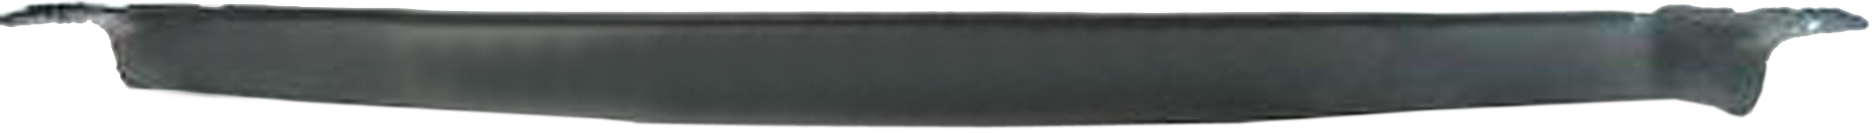 Aftermarket APRON/VALANCE/FILLER PLASTIC for GMC - V3500, V3500,87-91,Front bumper deflector